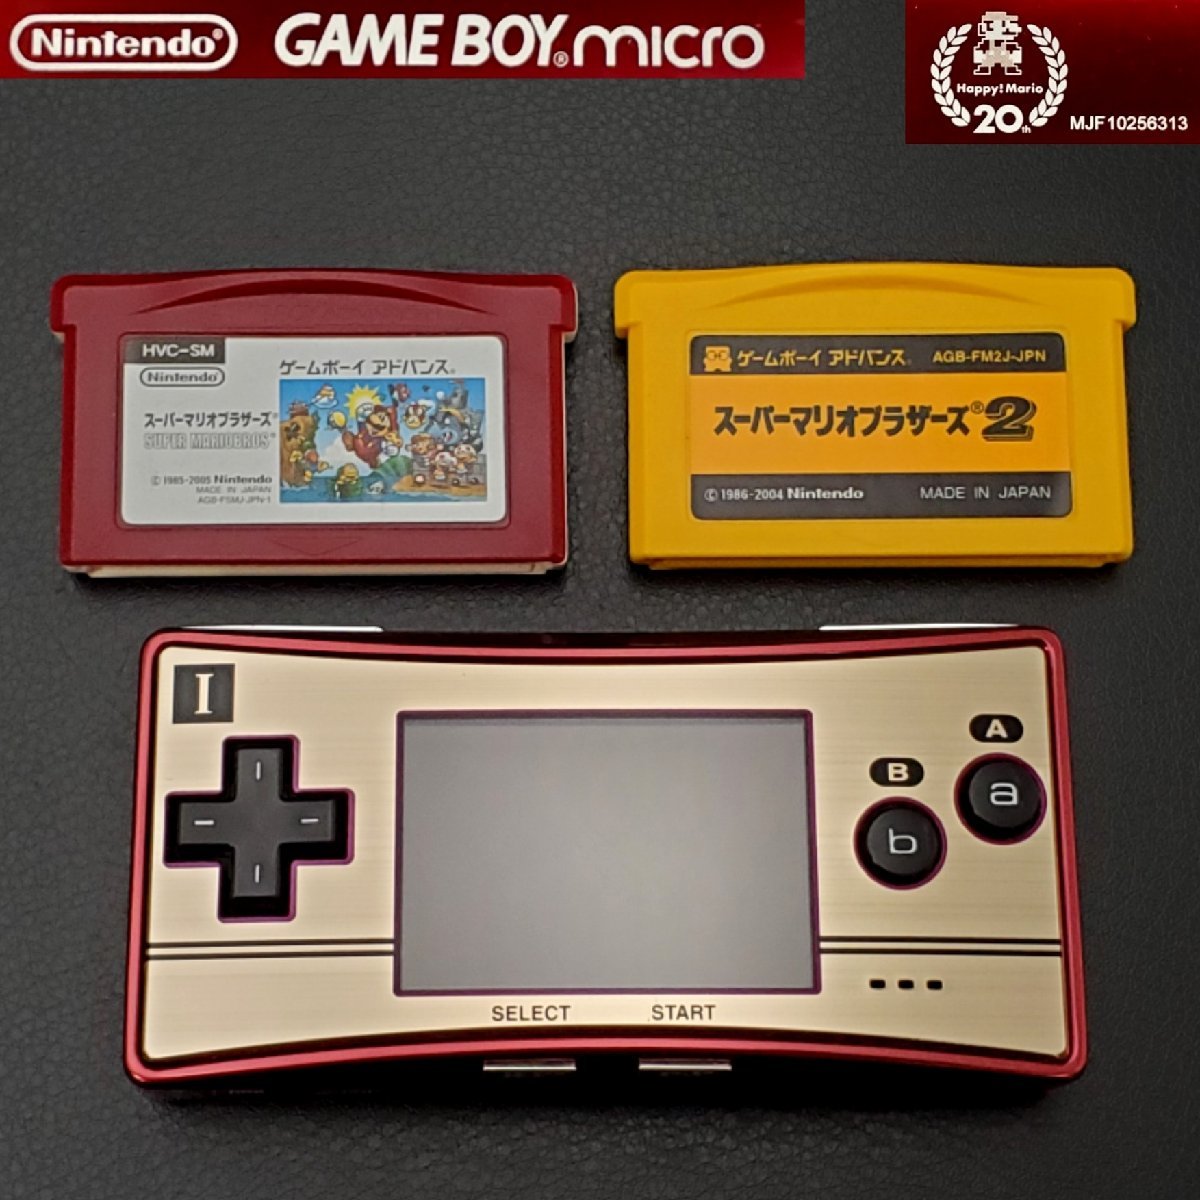 【宝蔵】Nintendo GAME BOY micro 任天堂 ゲームボーイ ミクロ Happy Mario 20th ファミコンカラー スーパーマリオソフト2点付 動作確認済